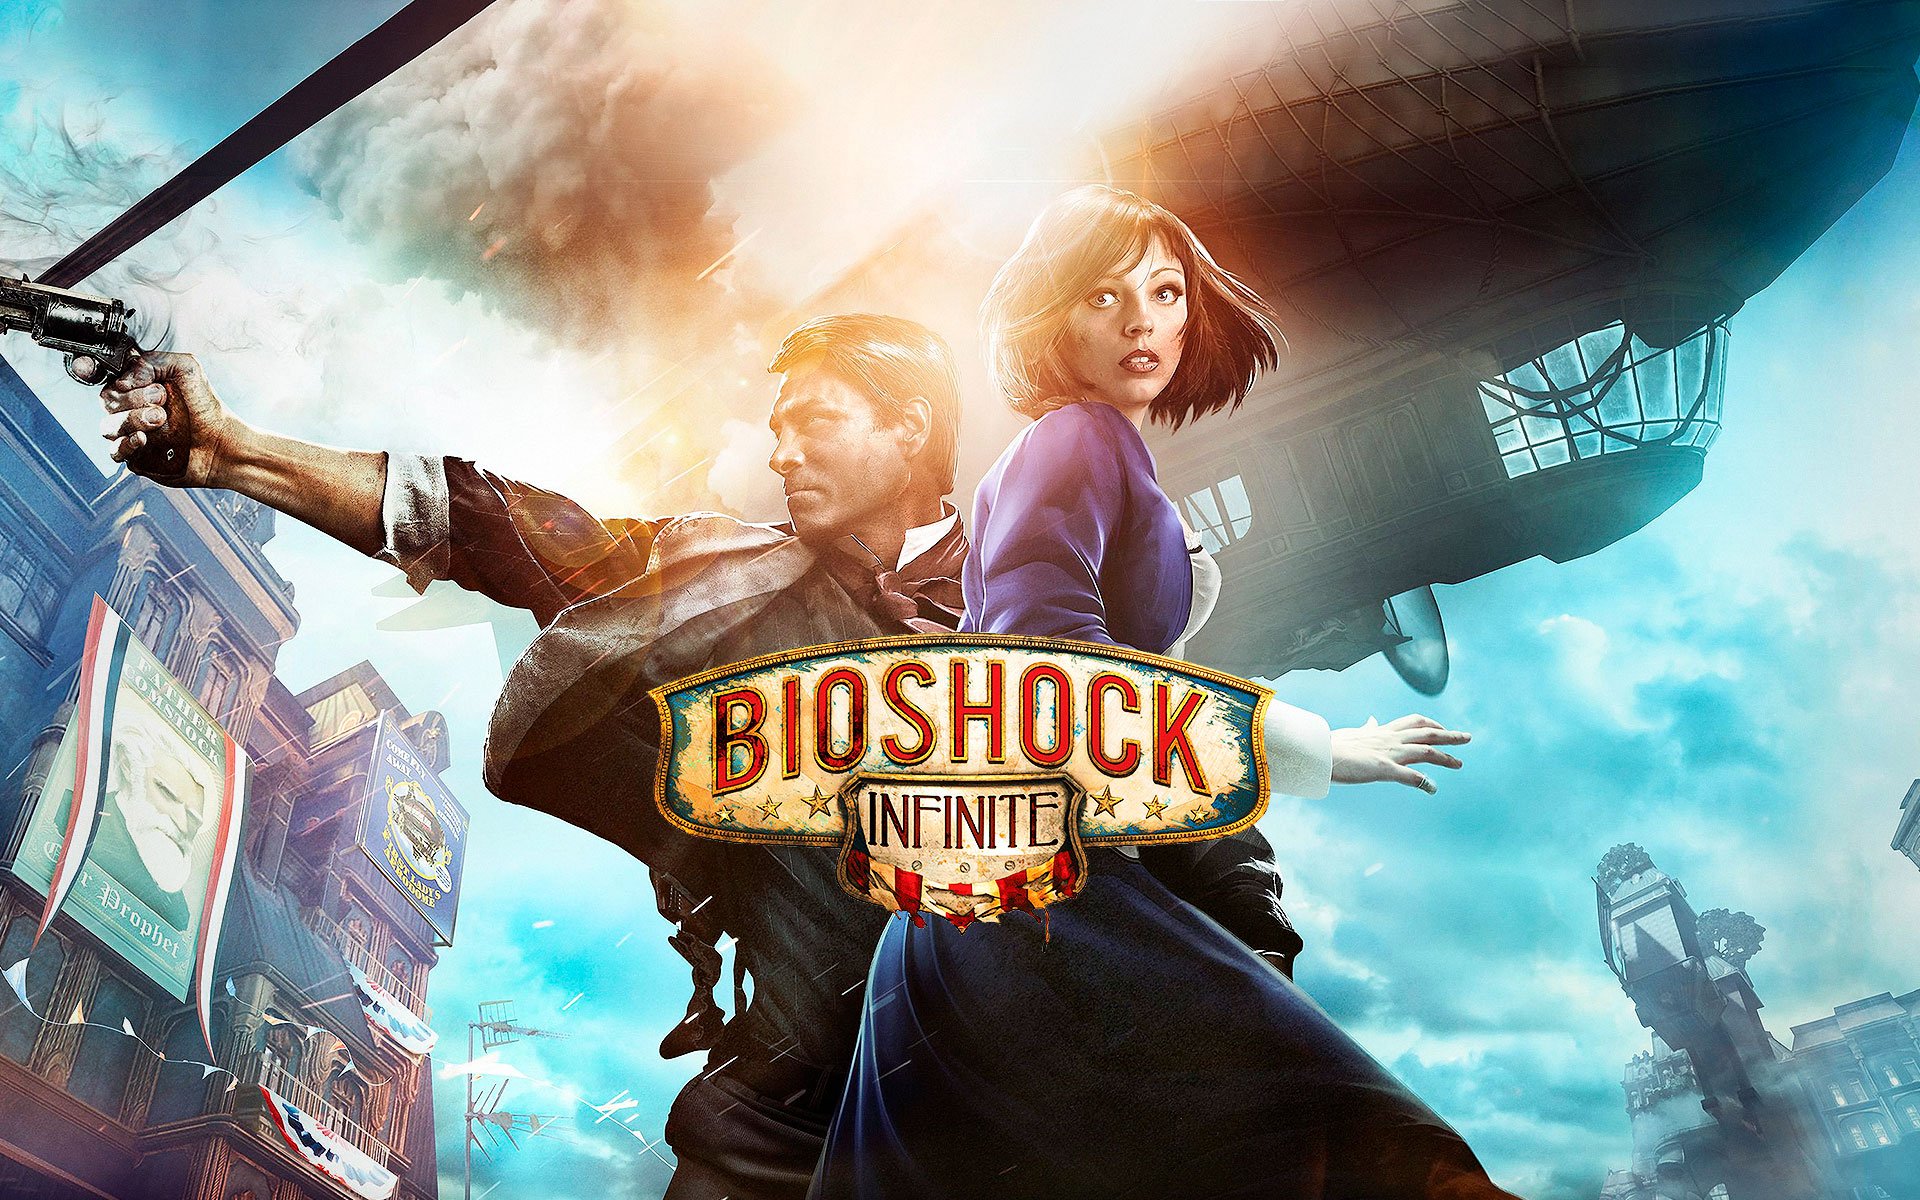 Compre BioShock Infinite a partir de R$ 89.99